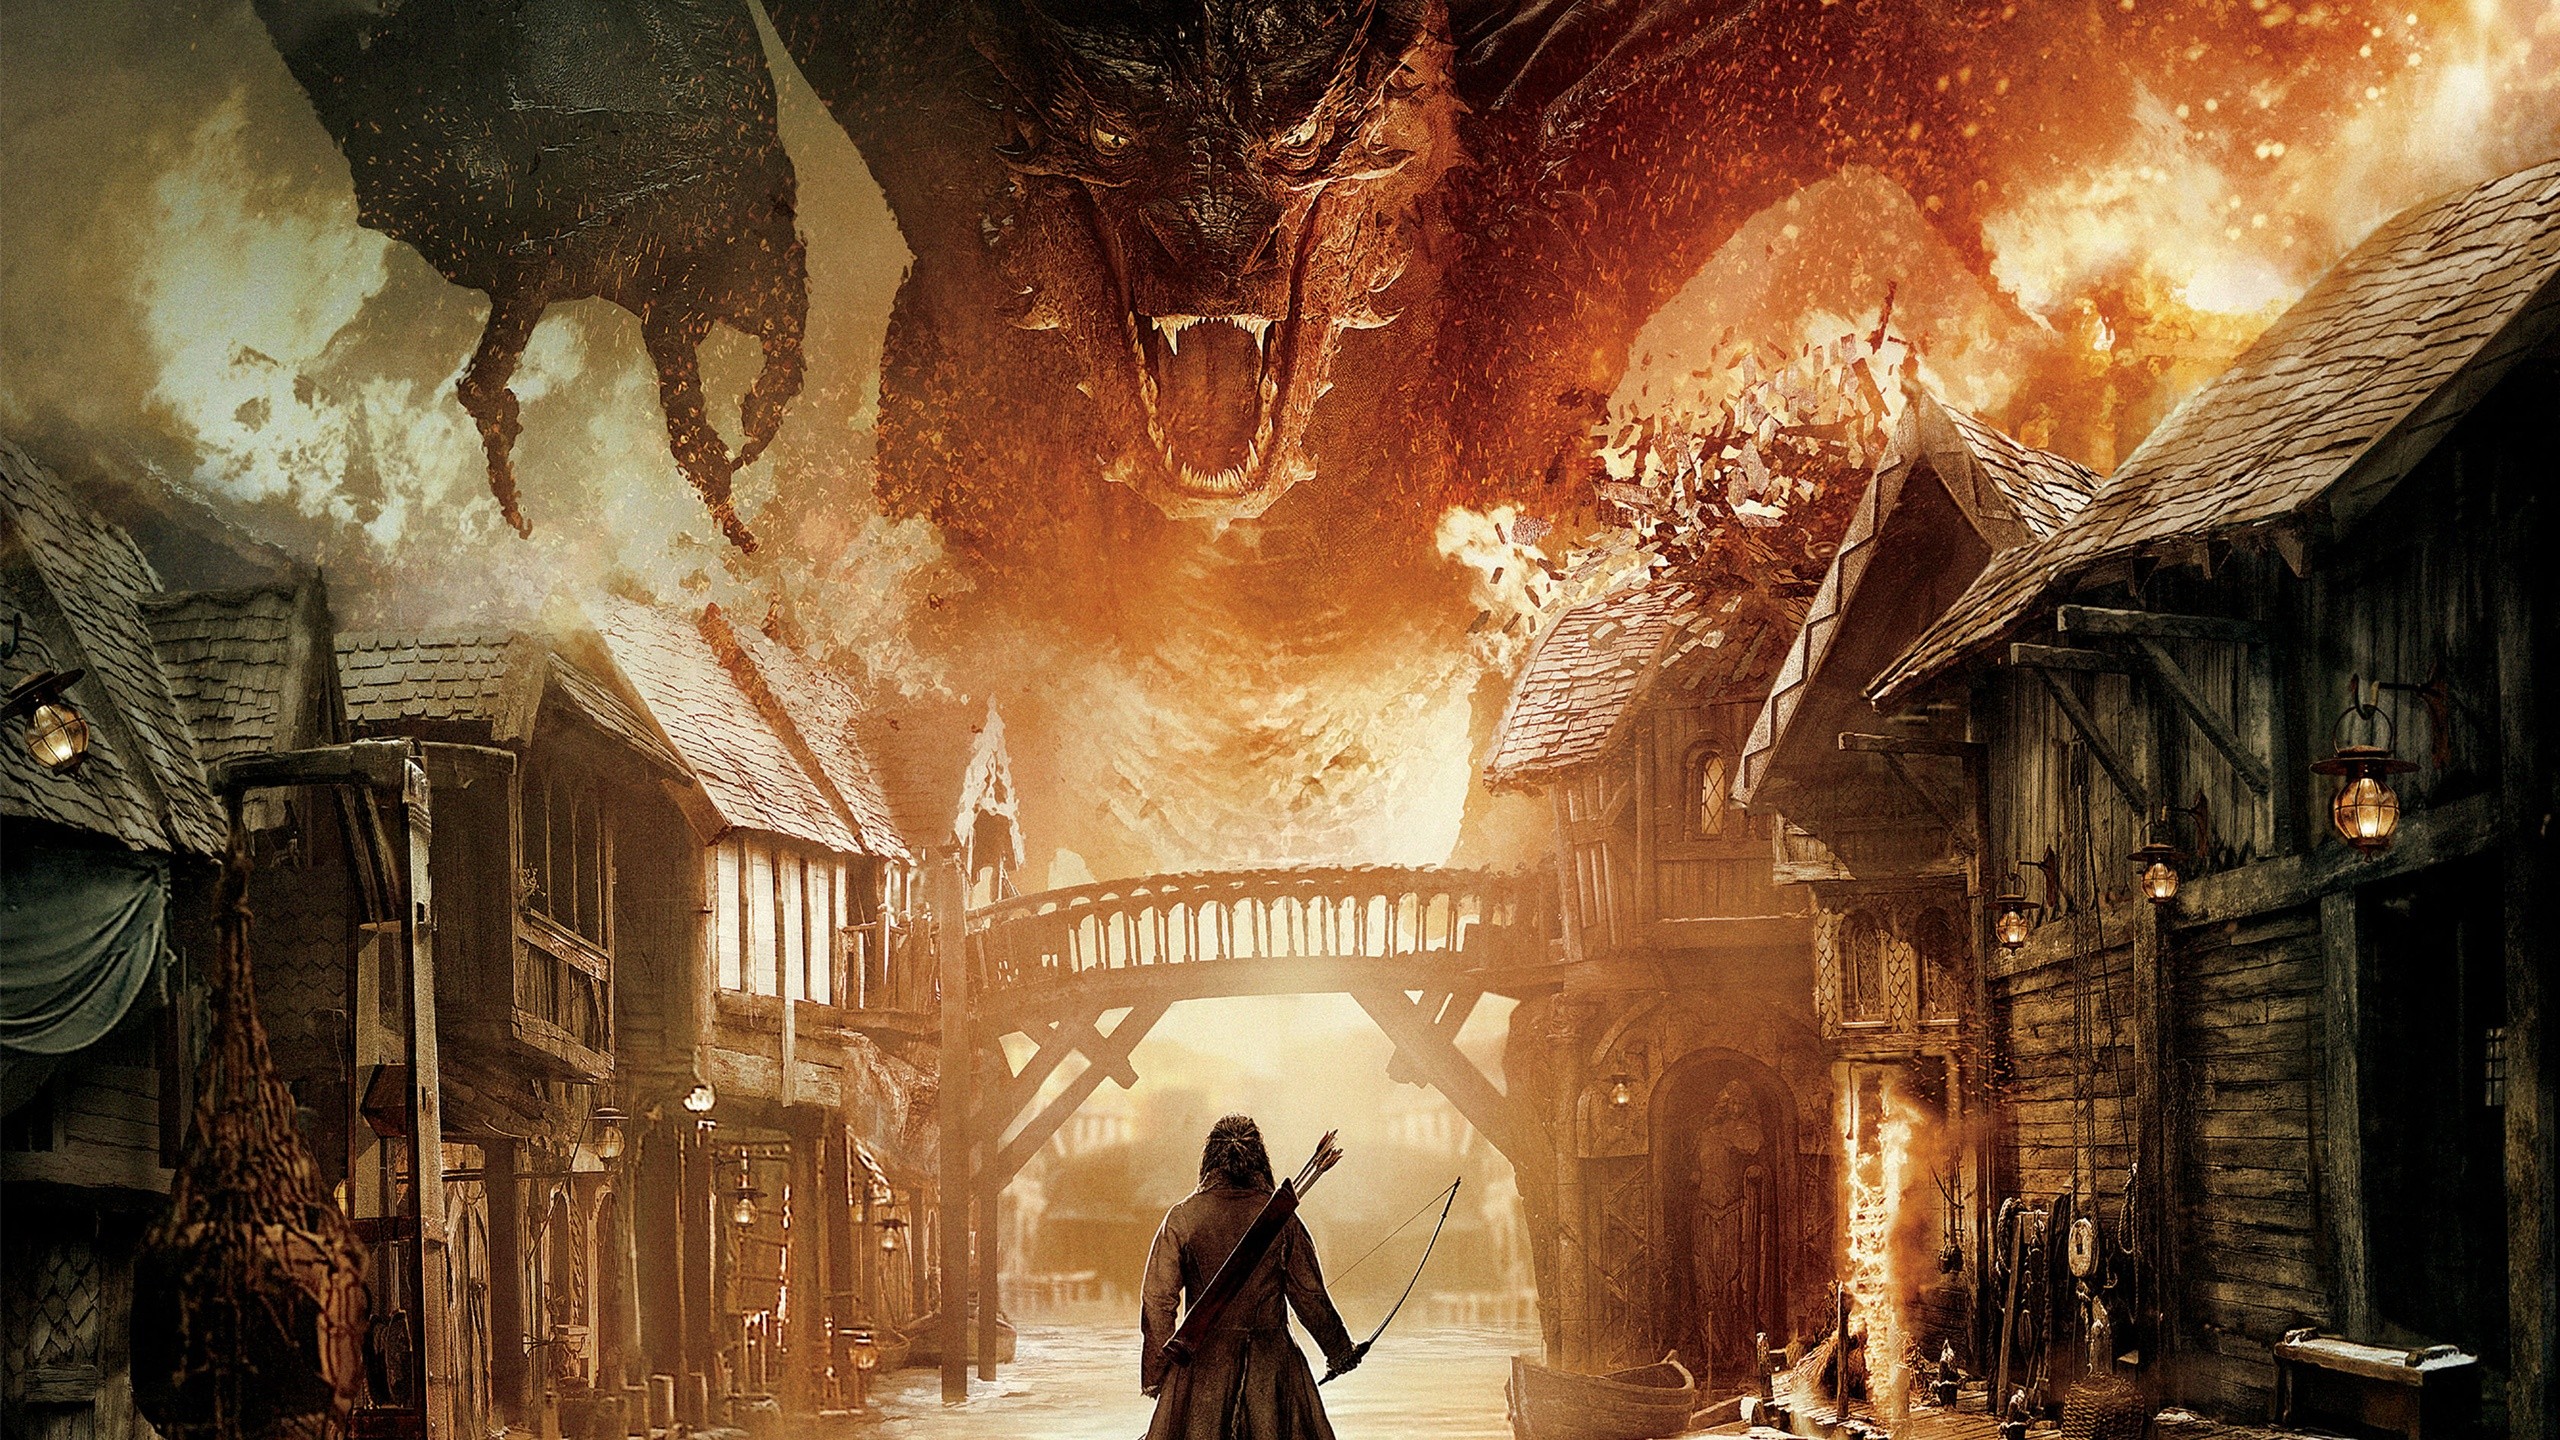 Smaug The Hobbit The Desolation Of Smaug Movies 2560x1440